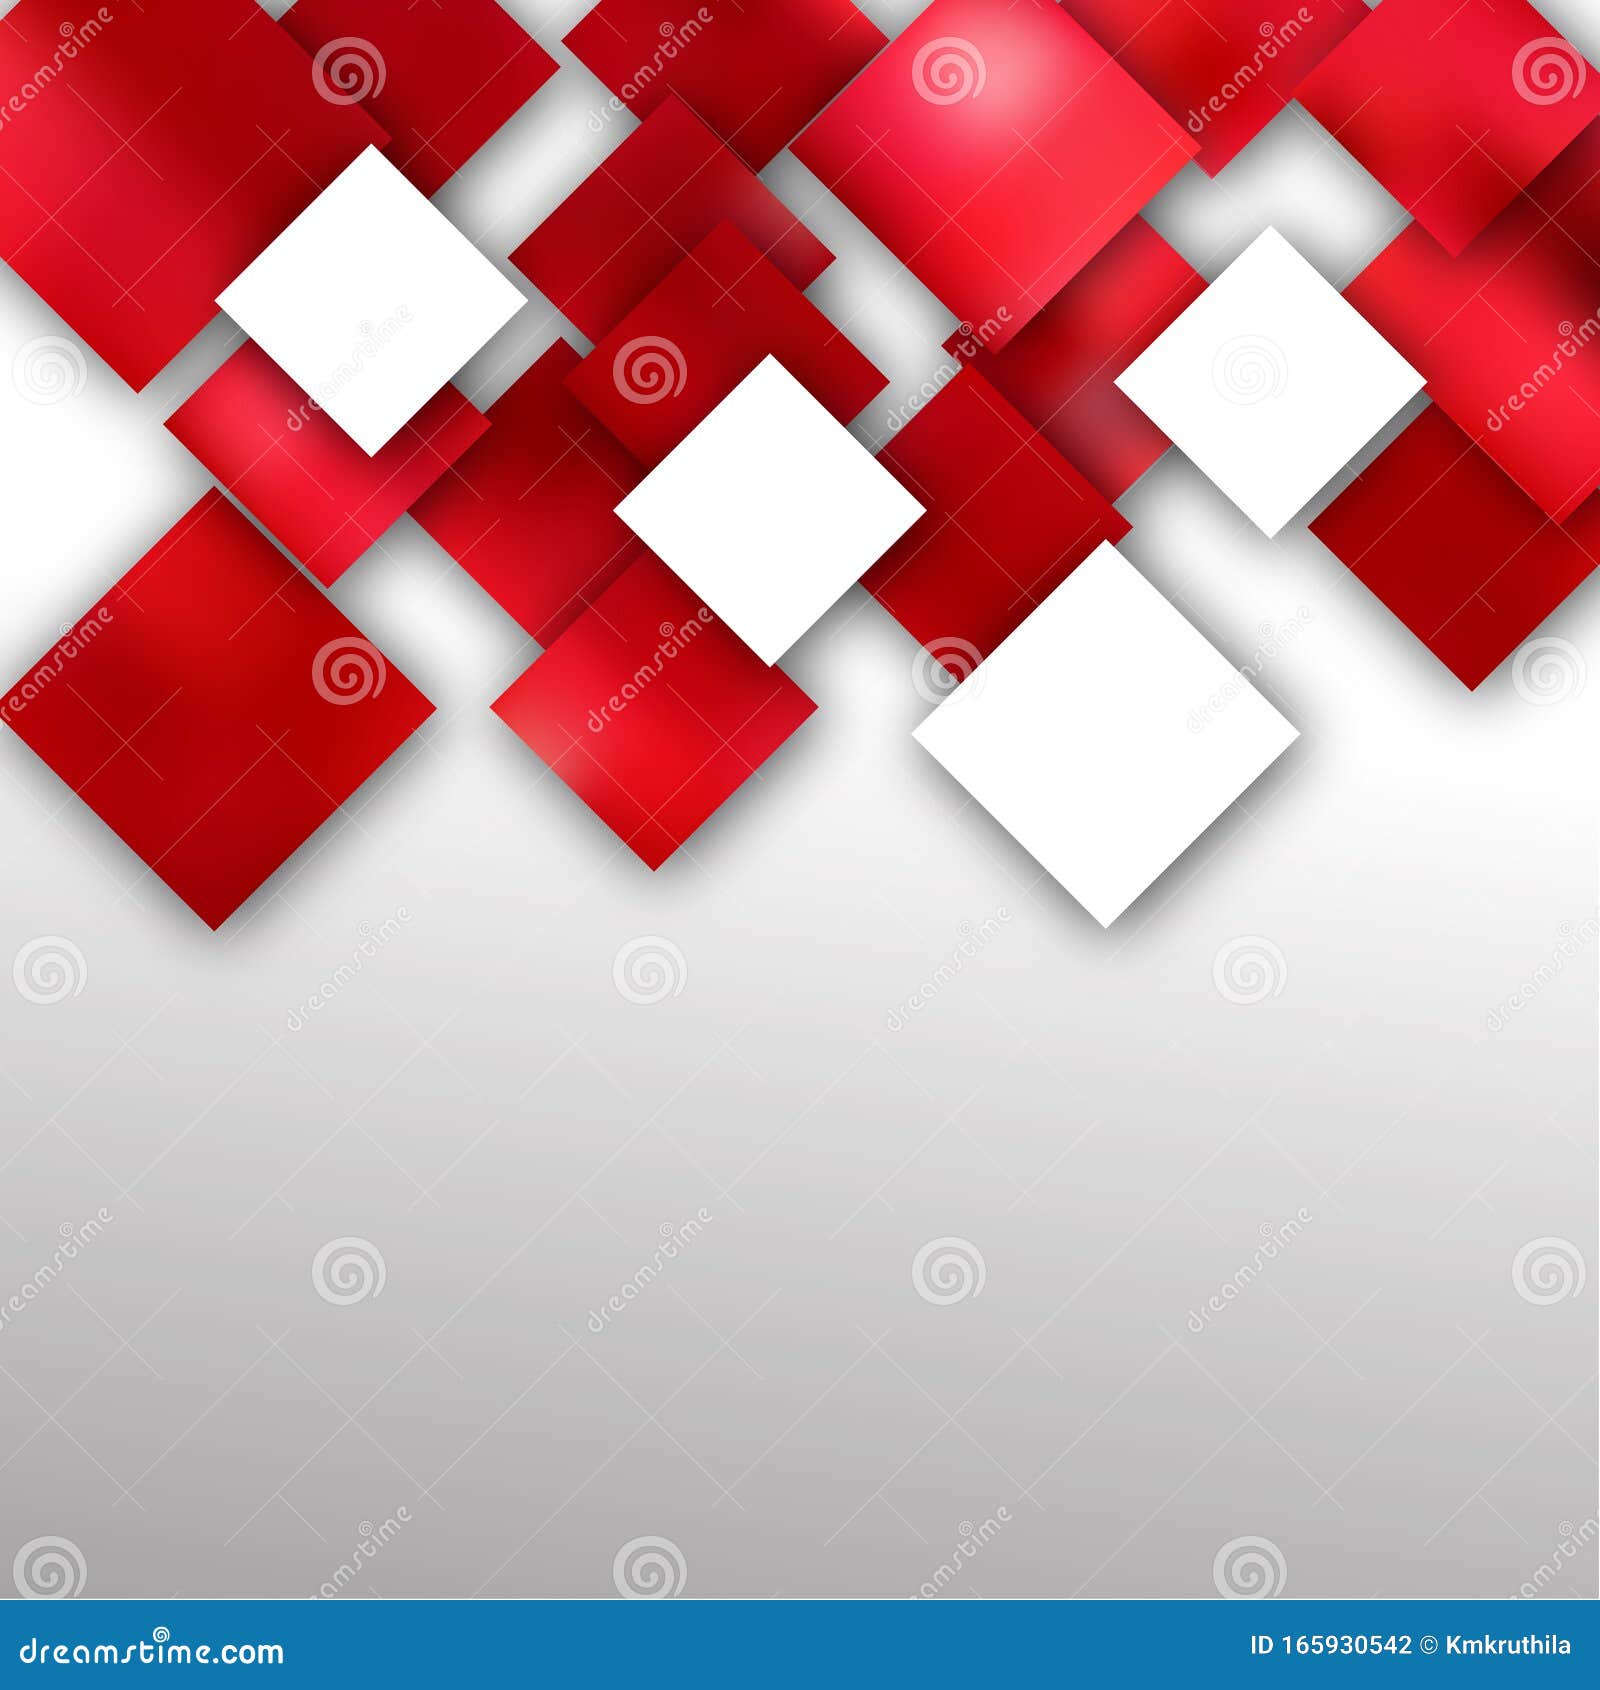 Để trang trí cho không gian làm việc của bạn với một hình nền độc đáo, thanh lịch và hiện đại, bạn không thể bỏ qua mẫu hình nền đỏ trắng vuông trừu tượng. Với sự kết hợp của các hình vuông đầy đặn, mối liên hệ mạnh mẽ giữa đỏ và trắng, đây chắc chắn là một lựa chọn tuyệt vời để thể hiện sự cá tính và độc đáo của bạn.